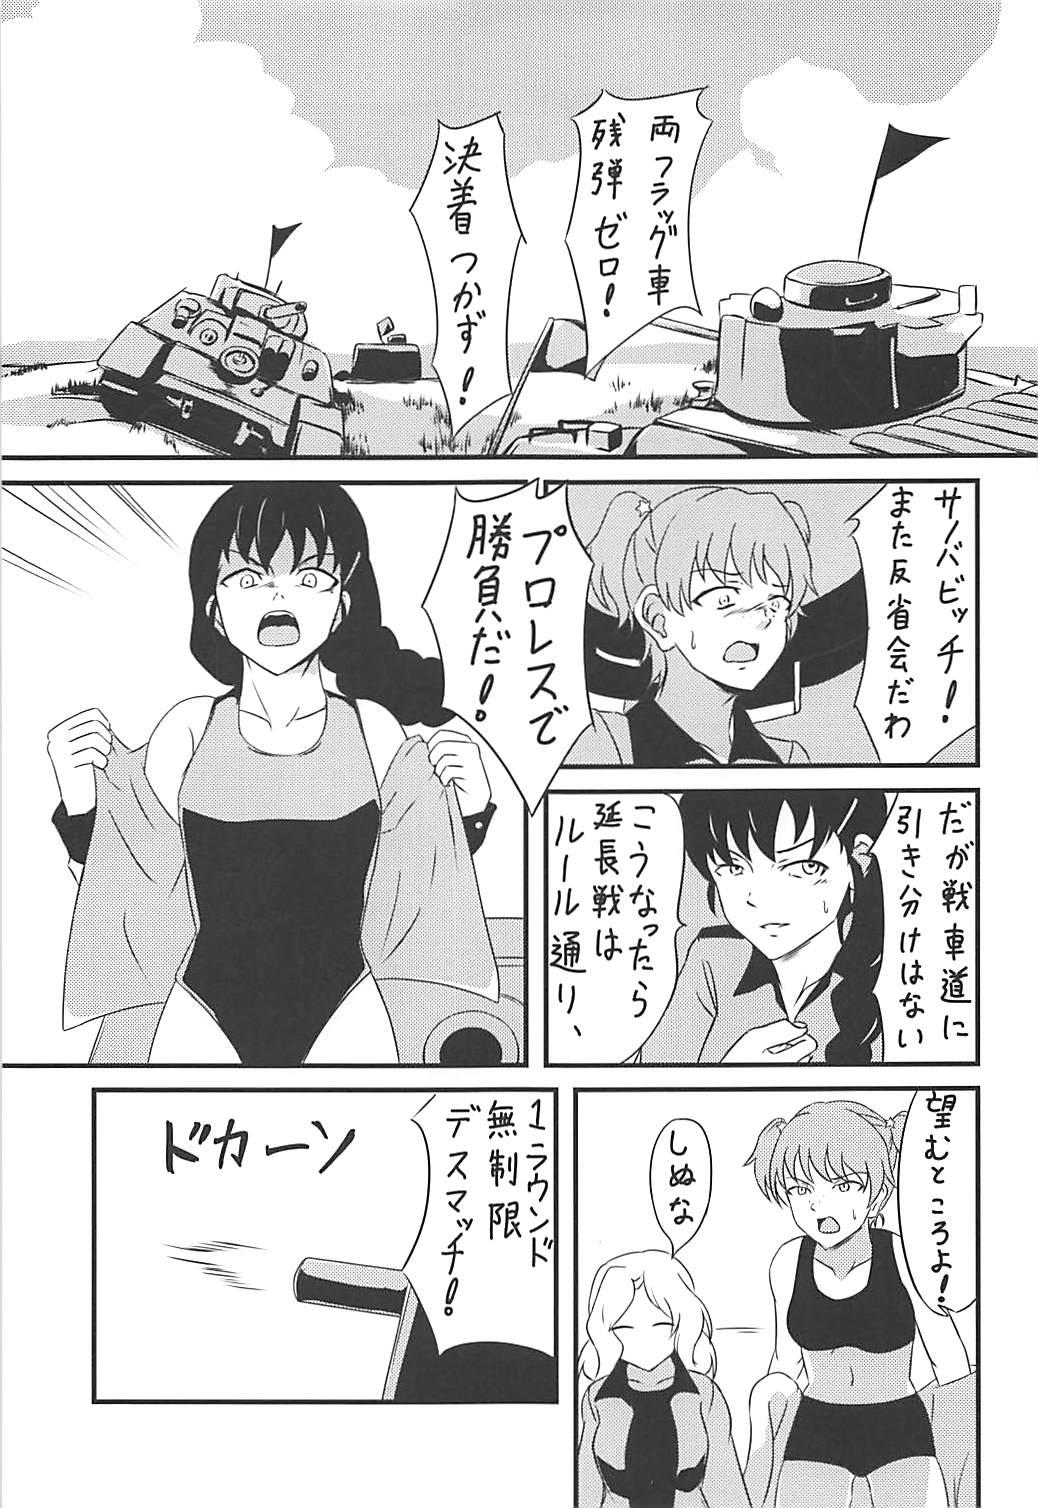 Exgirlfriend Rukuriri Club Kaizokuban - Girls und panzer Hentai - Page 2